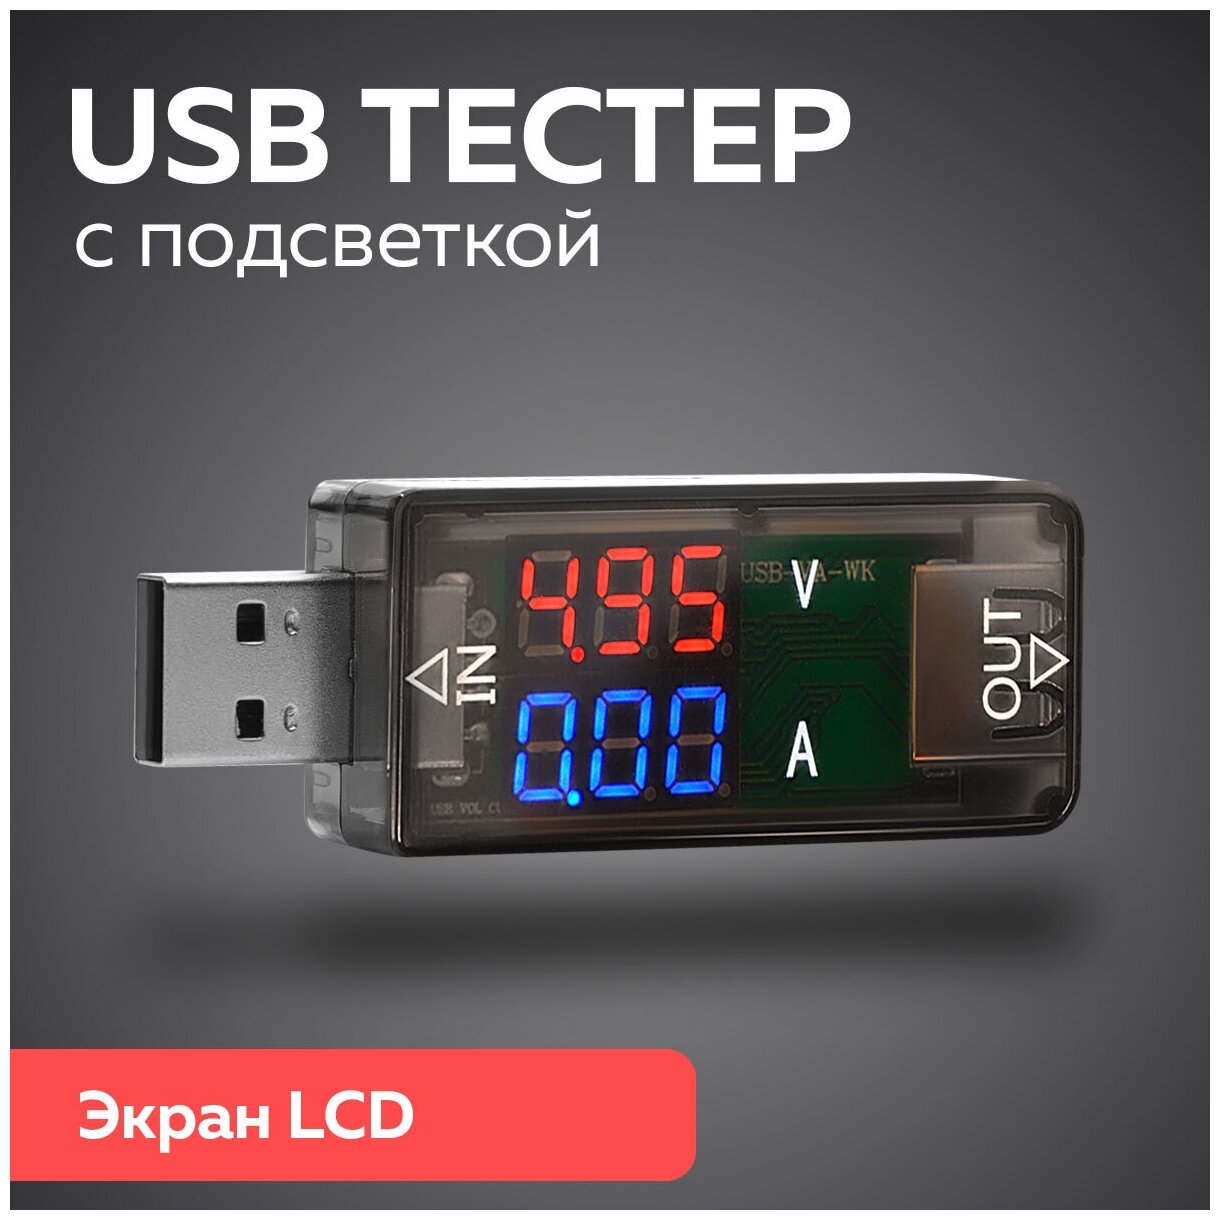 USB-тестер измерения тока напряжения